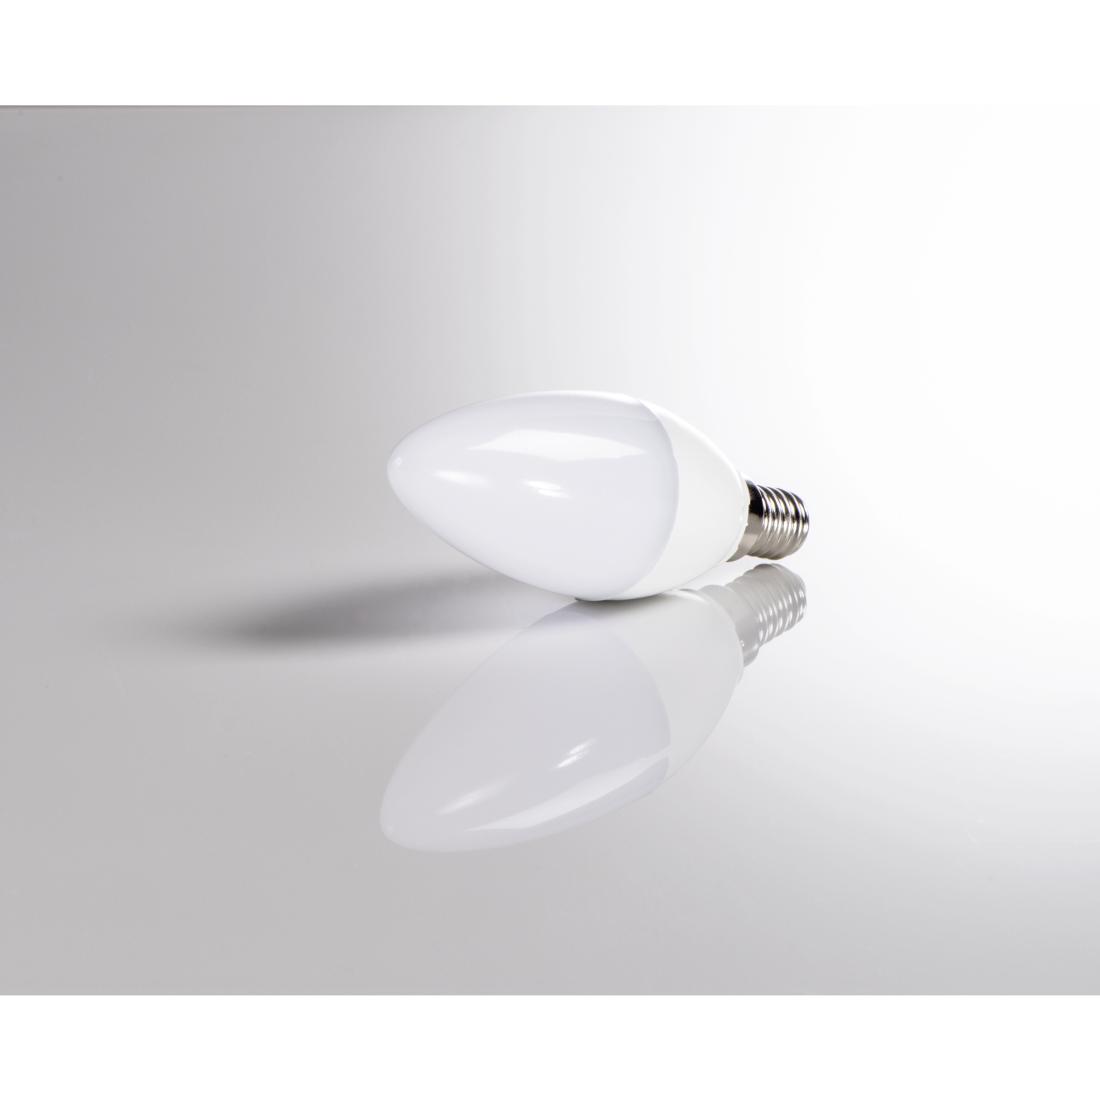 abx3 High-Res Image 3 - Xavax, Ampoule LED, E14, 470lm rempl. ampoule bougie 40 W, lumière du jour